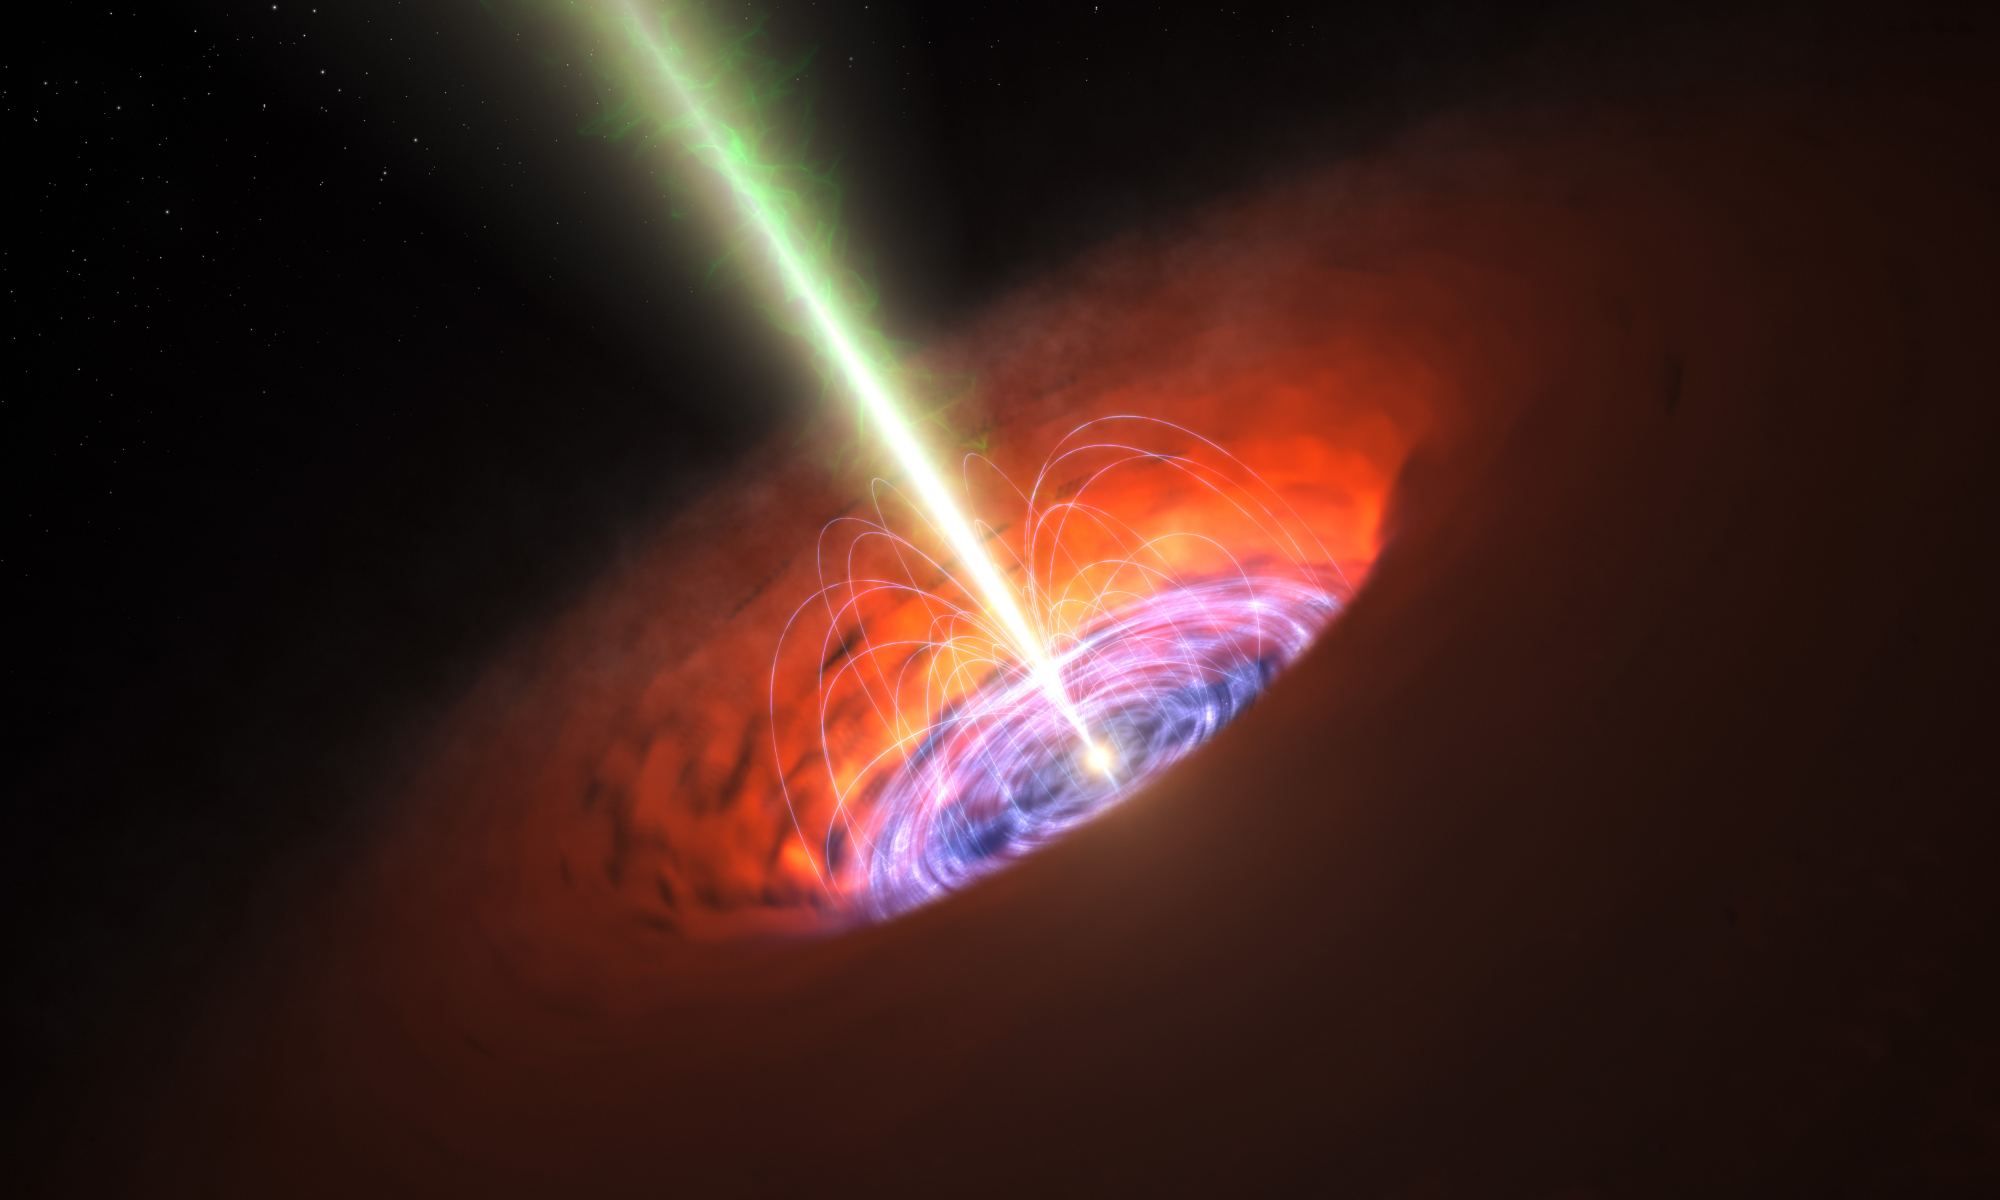 Черные дыры могут использоваться в качестве квантовых компьютеров развитыми цивилизациями